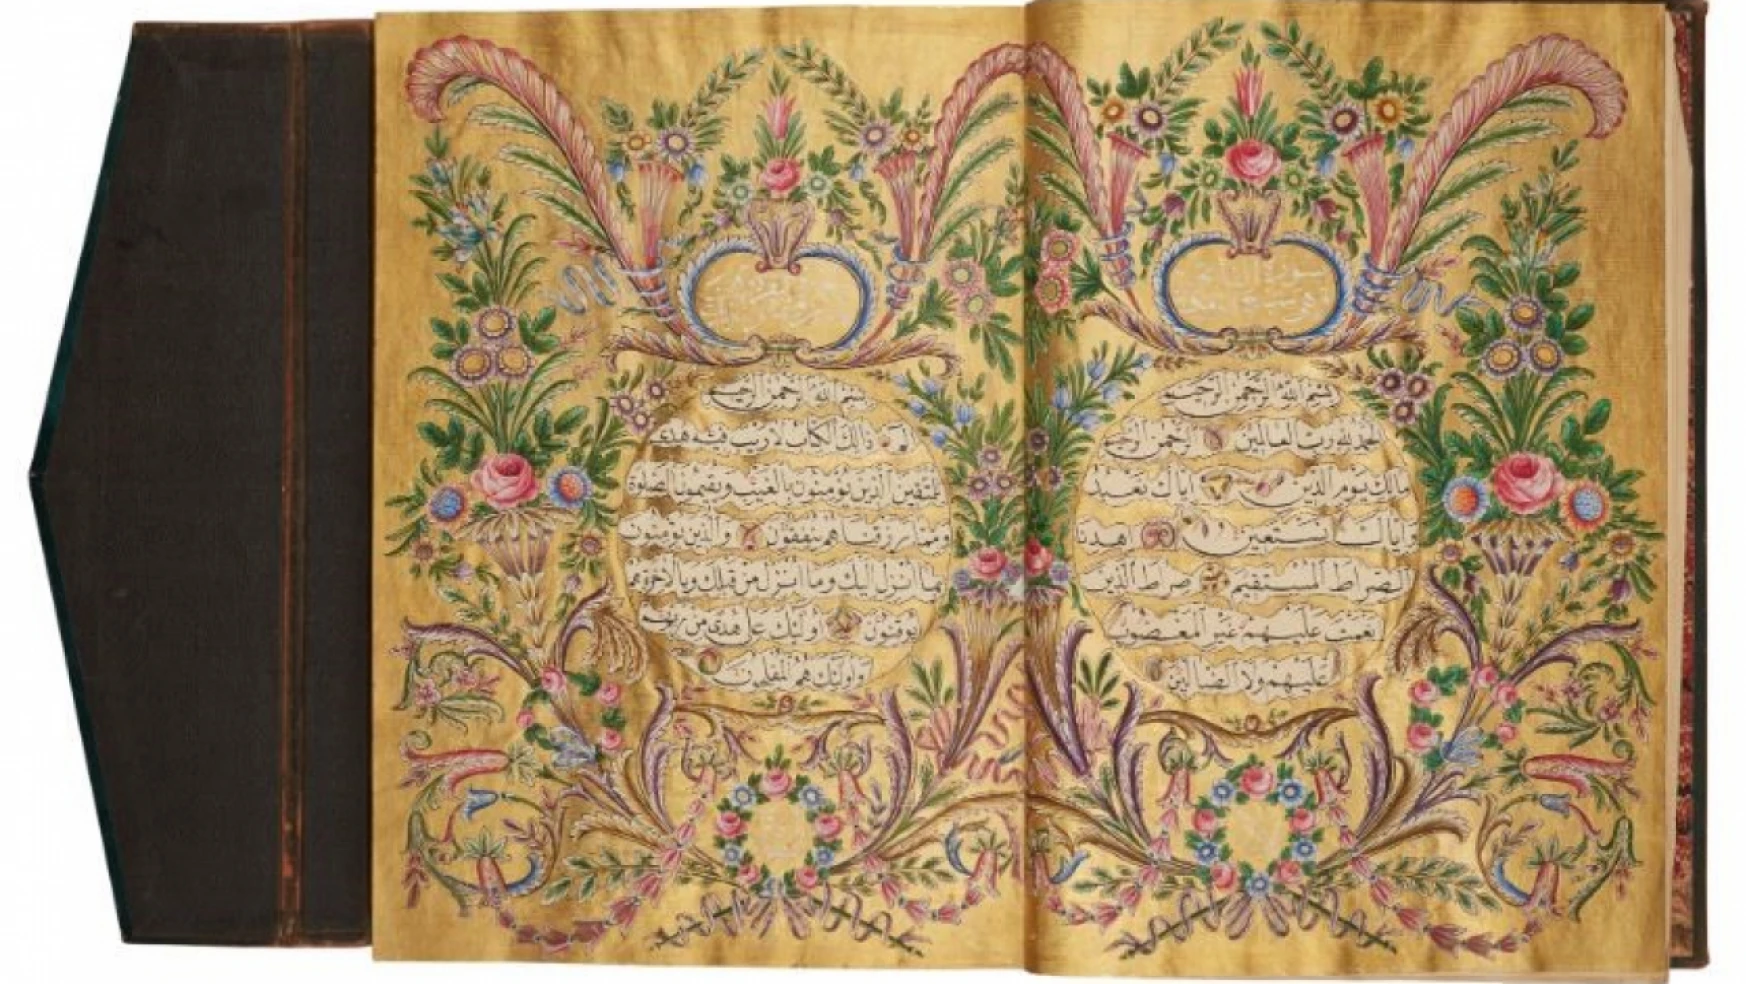 Münire Sultan'ın Kur'an-ı Kerim'i 4.6 milyon liraya satıldı